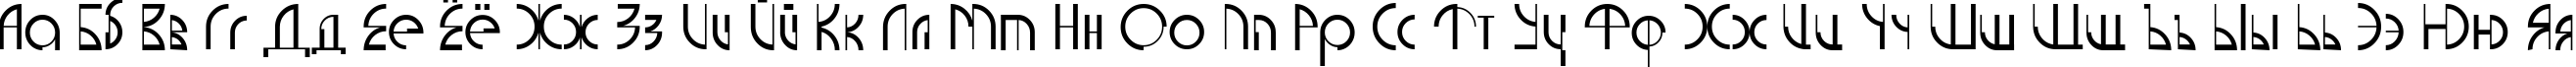 Пример написания русского алфавита шрифтом Current